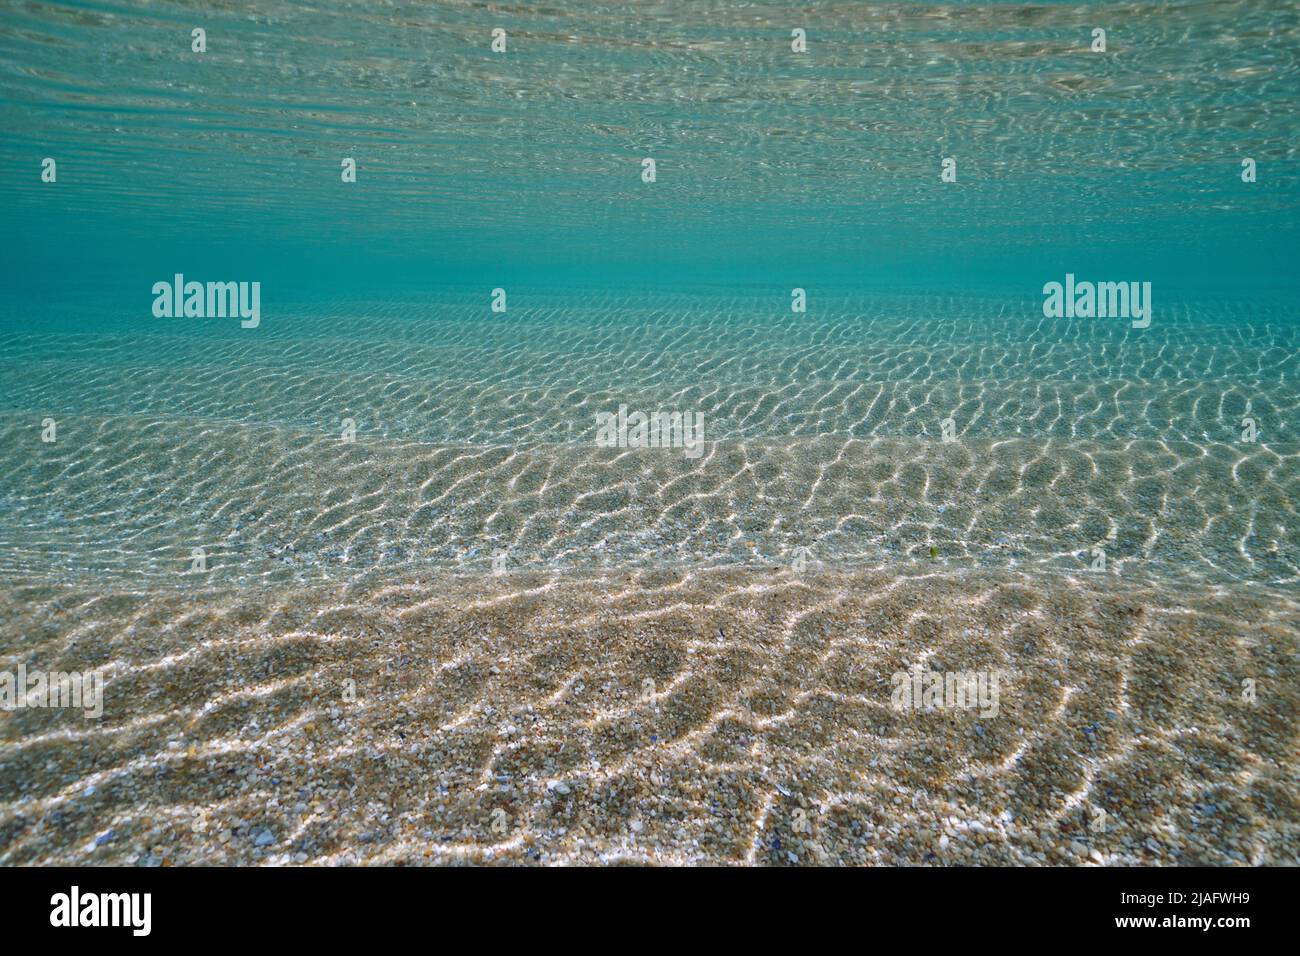 Ondulations de sable sous l'eau sous la surface de la mer avec eau claire, fond d'océan de sable naturel, océan Atlantique, Espagne Banque D'Images